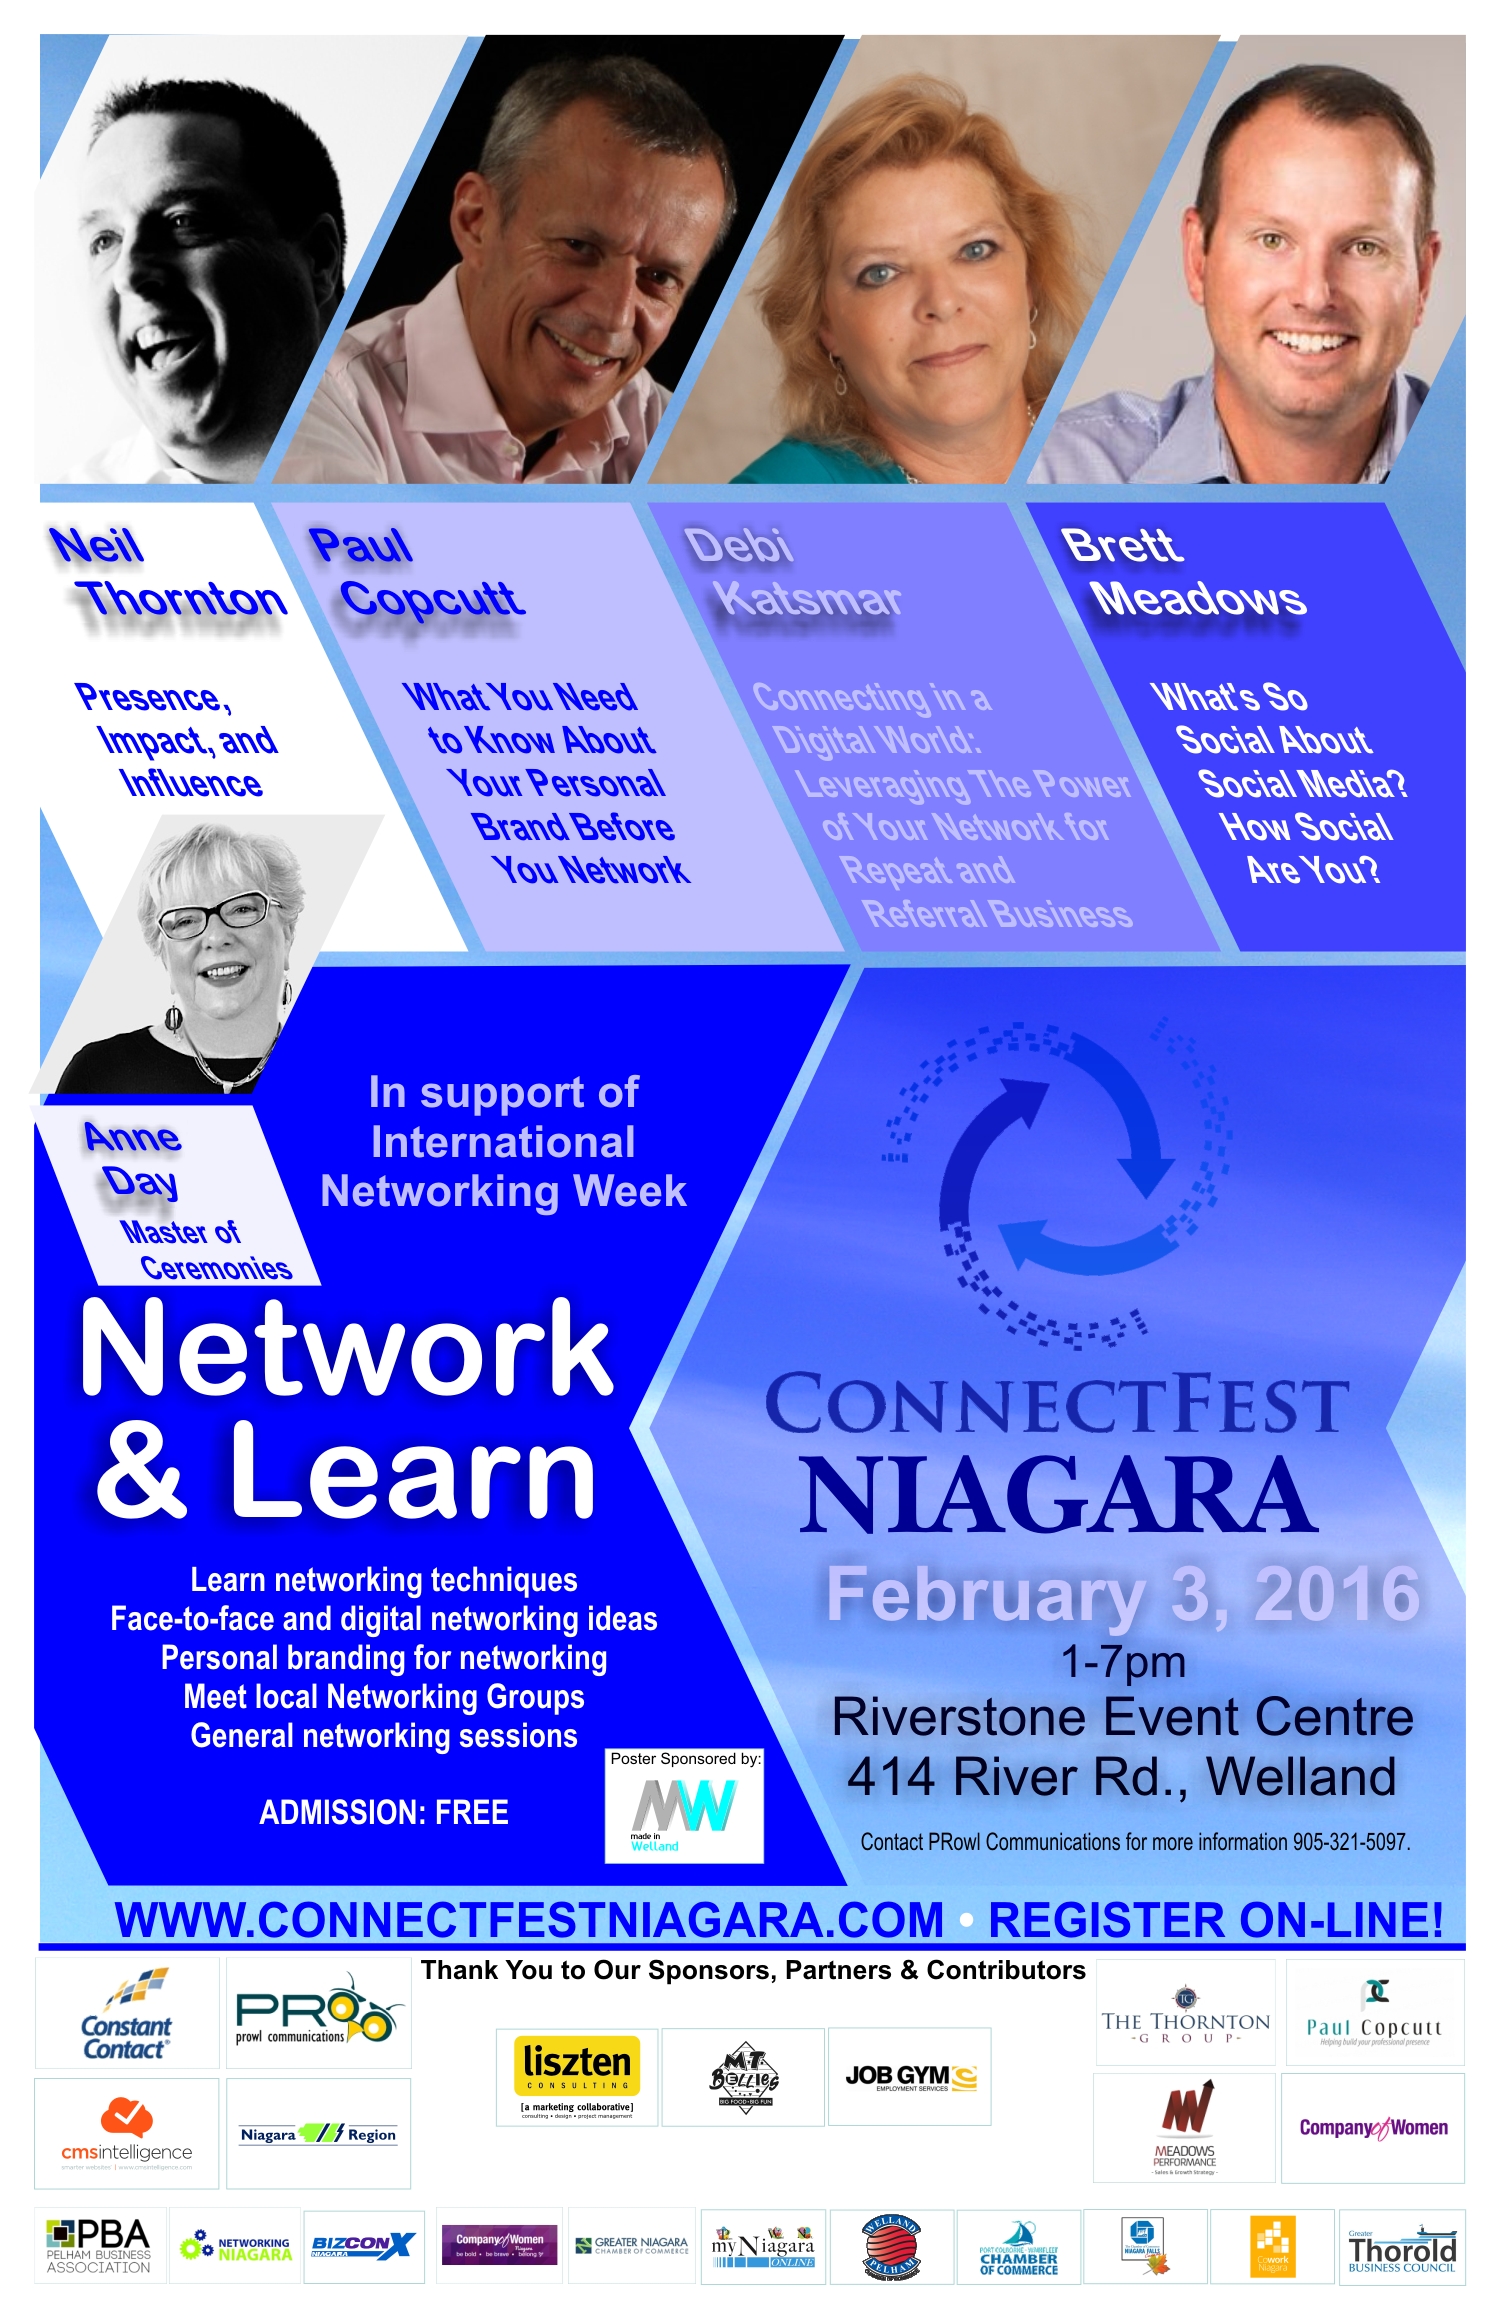 Connectfest Niagara Poster